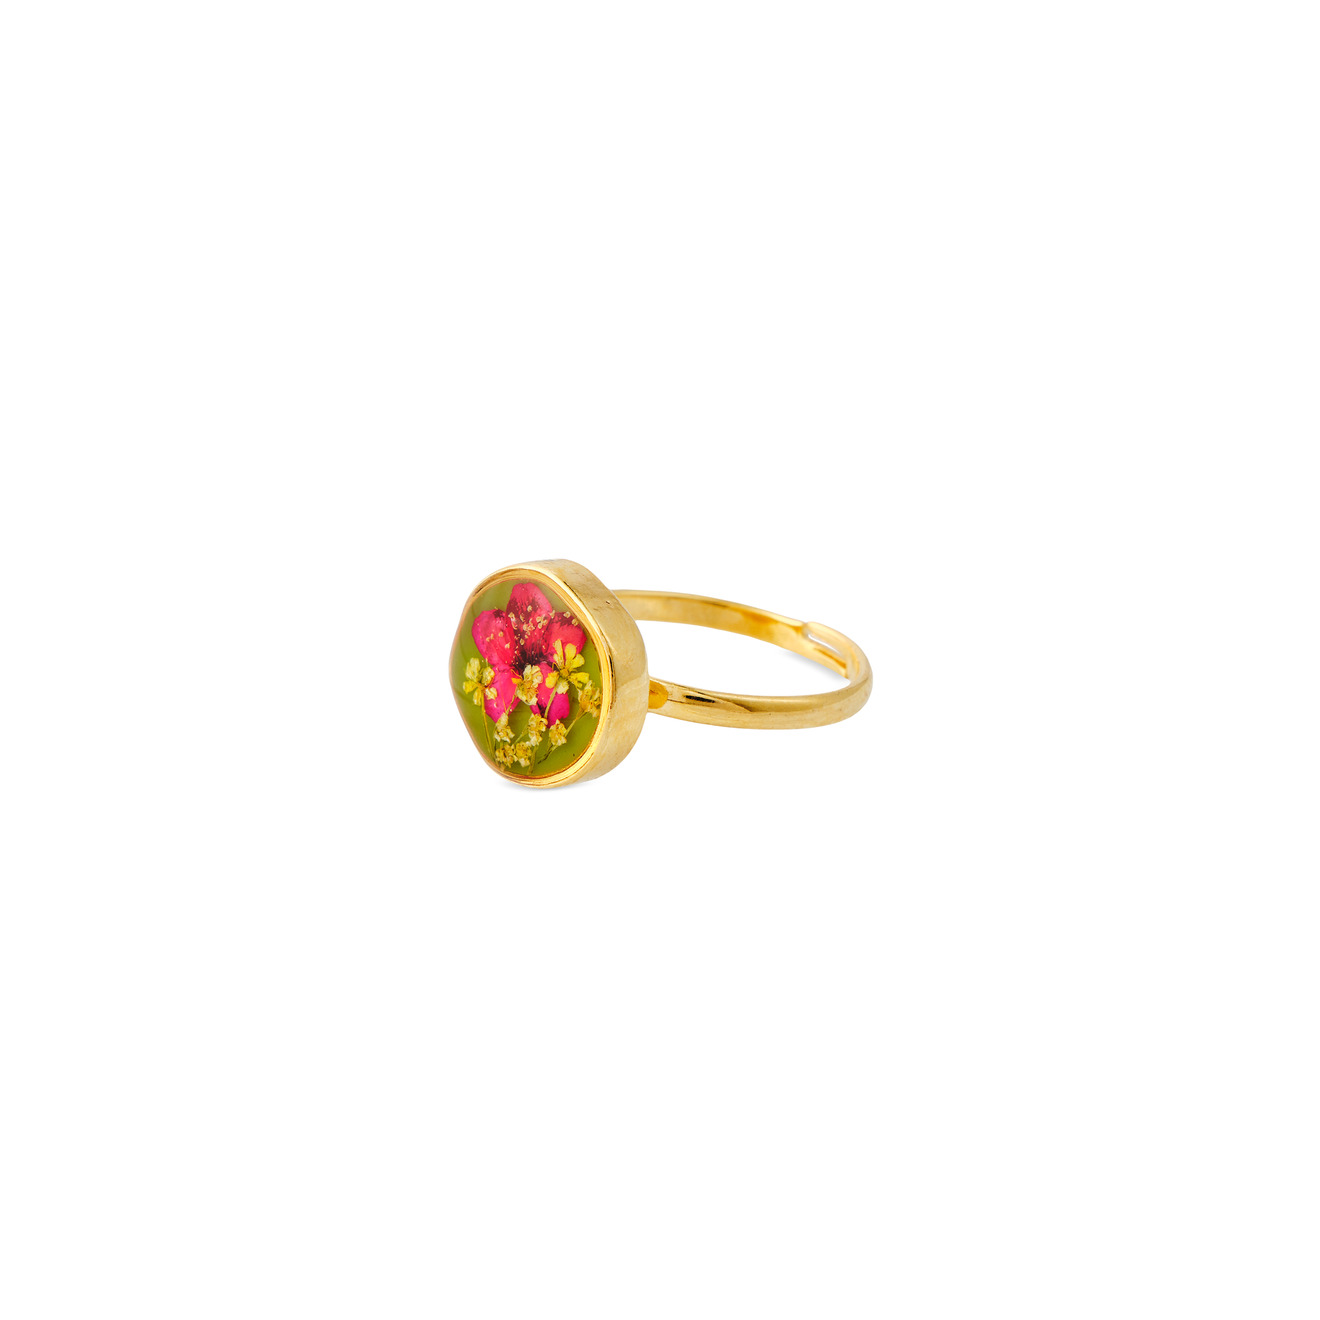 Wisteria Gems Маленькое золотистое зеленое круглое кольцо с красным цветком wisteria gems маленькое золотистое зеленое круглое кольцо с красным цветком